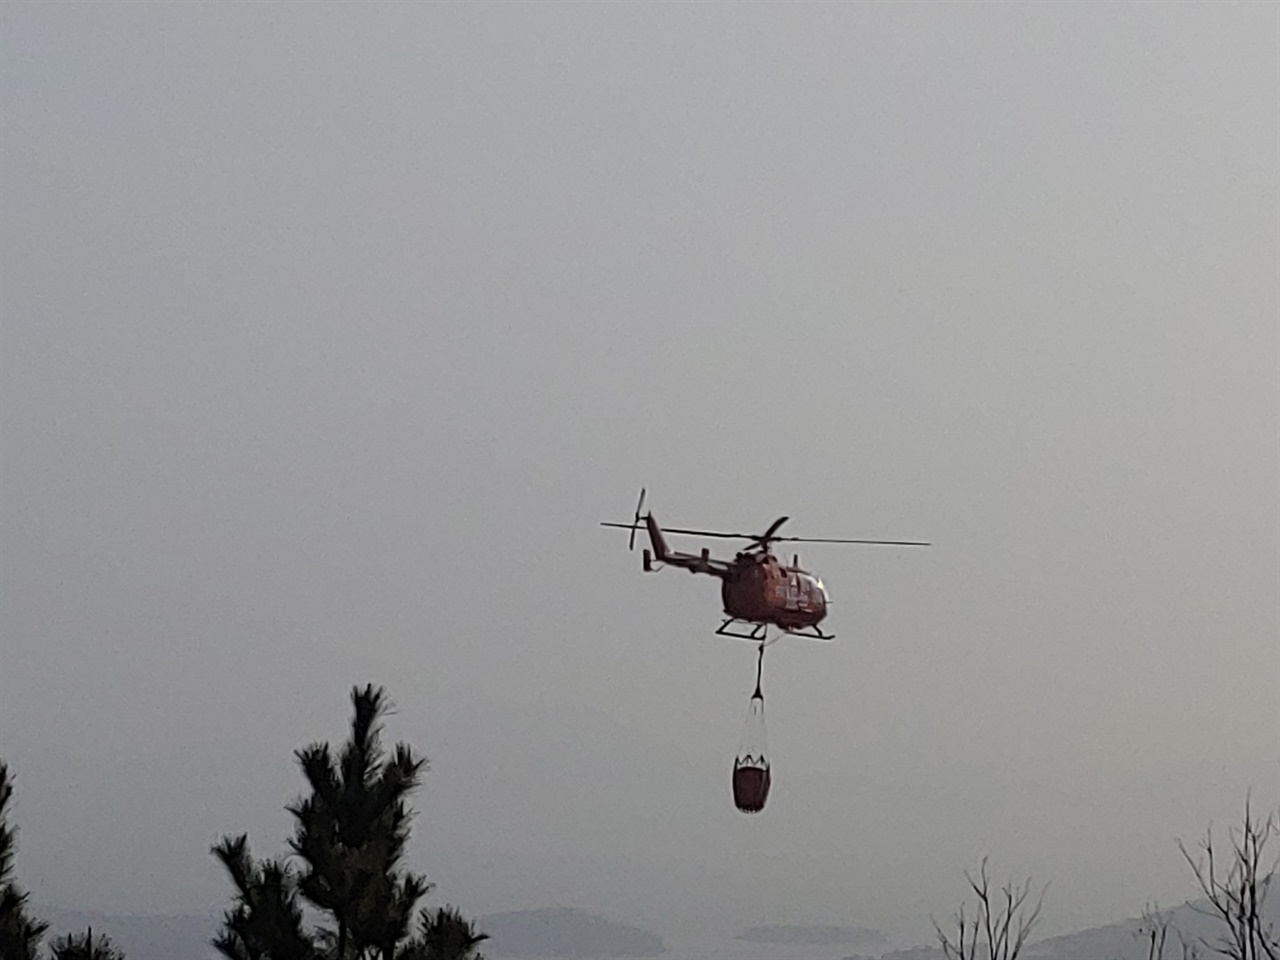 계속되는 산불에 마래산 주변을 순찰중인 소방헬기의 모습

